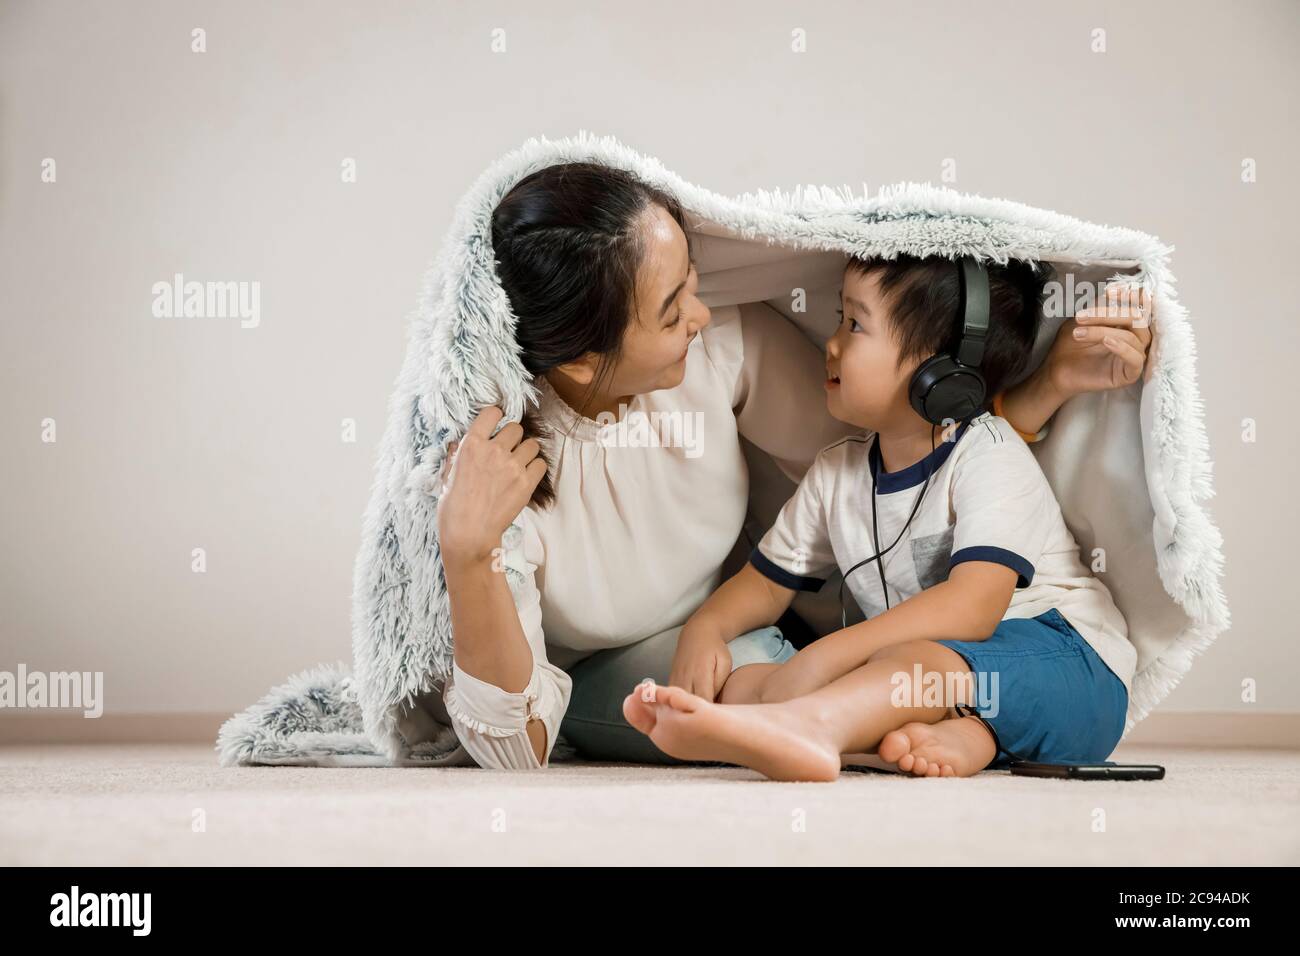 Asiatische Mutter versteckt unter Decke mit Kleinkind Kopfhörer tragen. Vietnamesische Mutter lächelt spielen verstecken und suchen mit ihrem Sohn, Familie Zeit Konzept Stockfoto